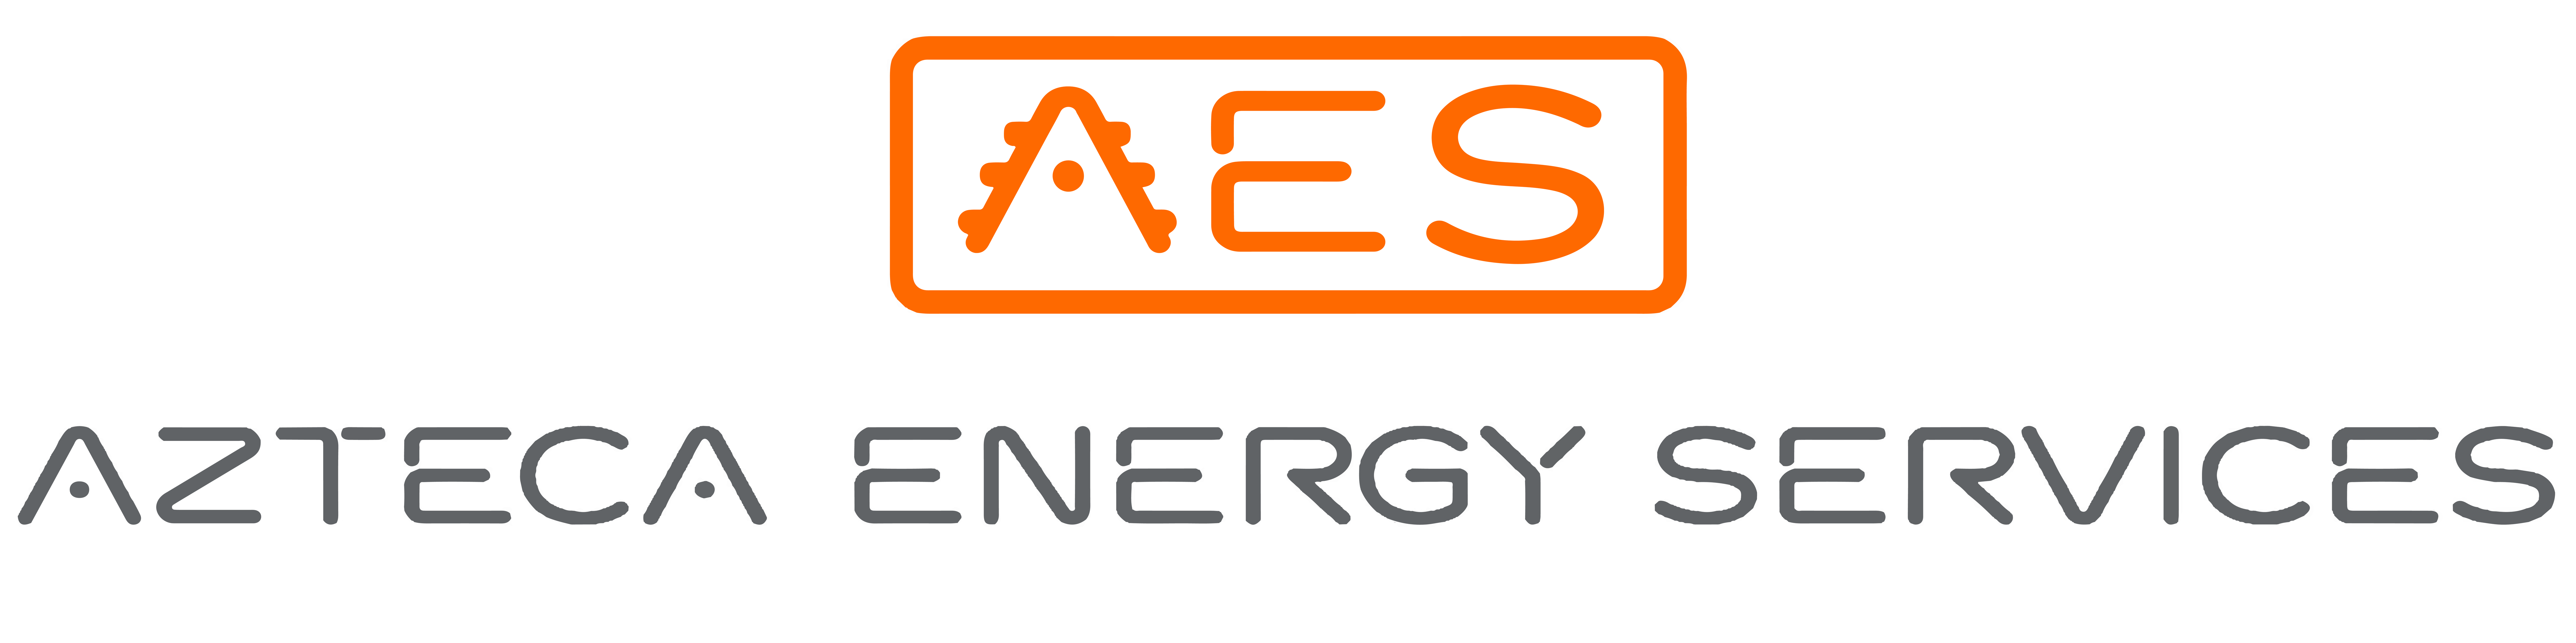 Azteca Energy Services